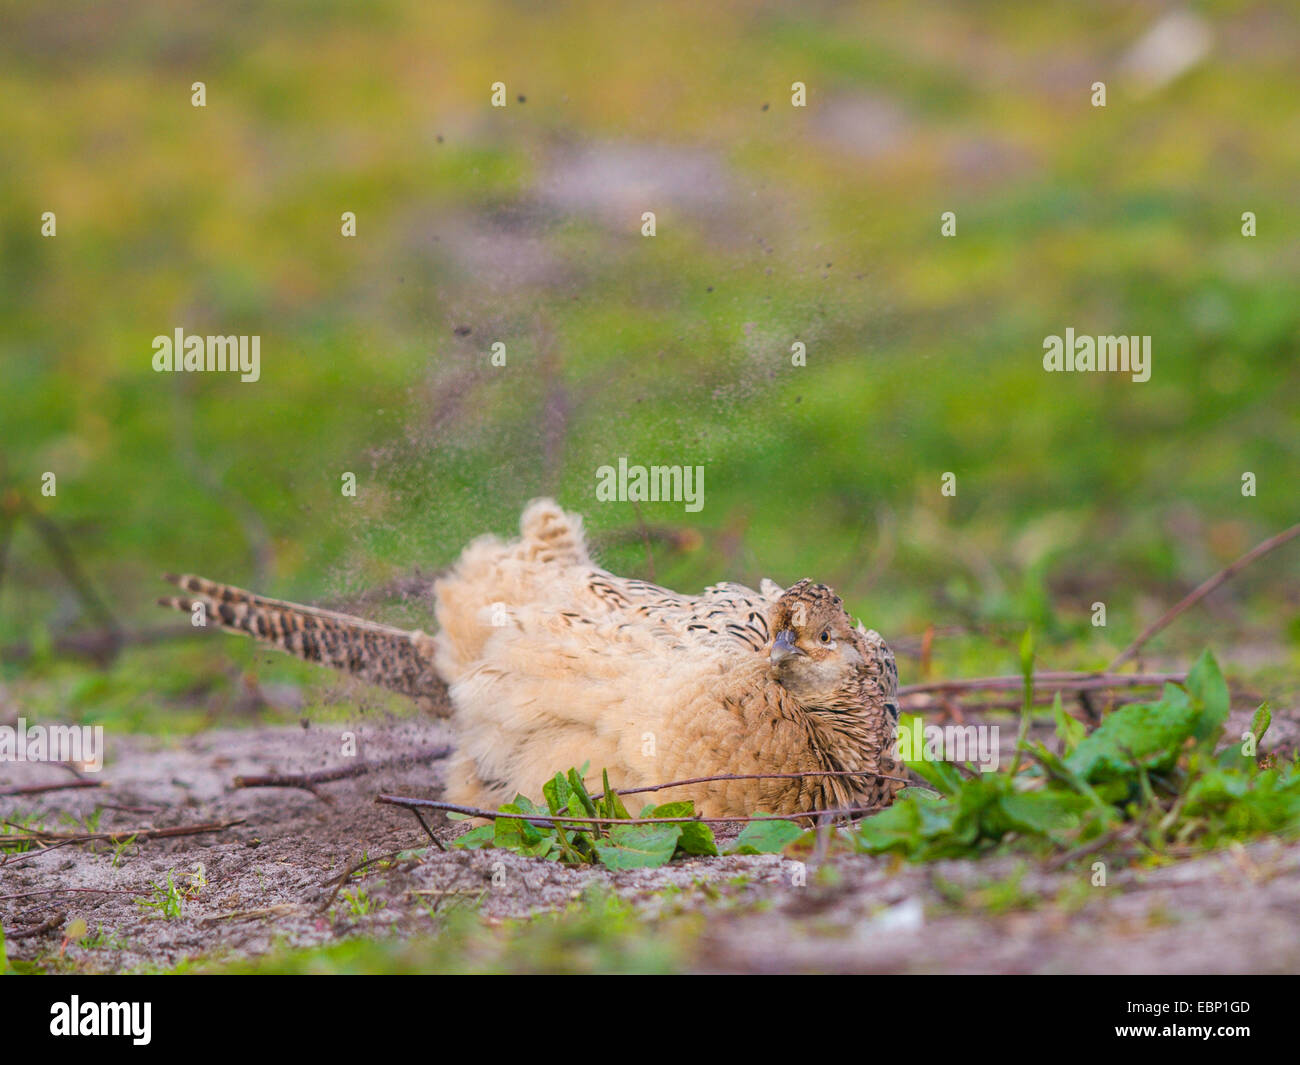 common pheasant, Caucasus Pheasant, Caucasian Pheasant (Phasianus colchicus), female bathing in the dirt, Germany Stock Photo